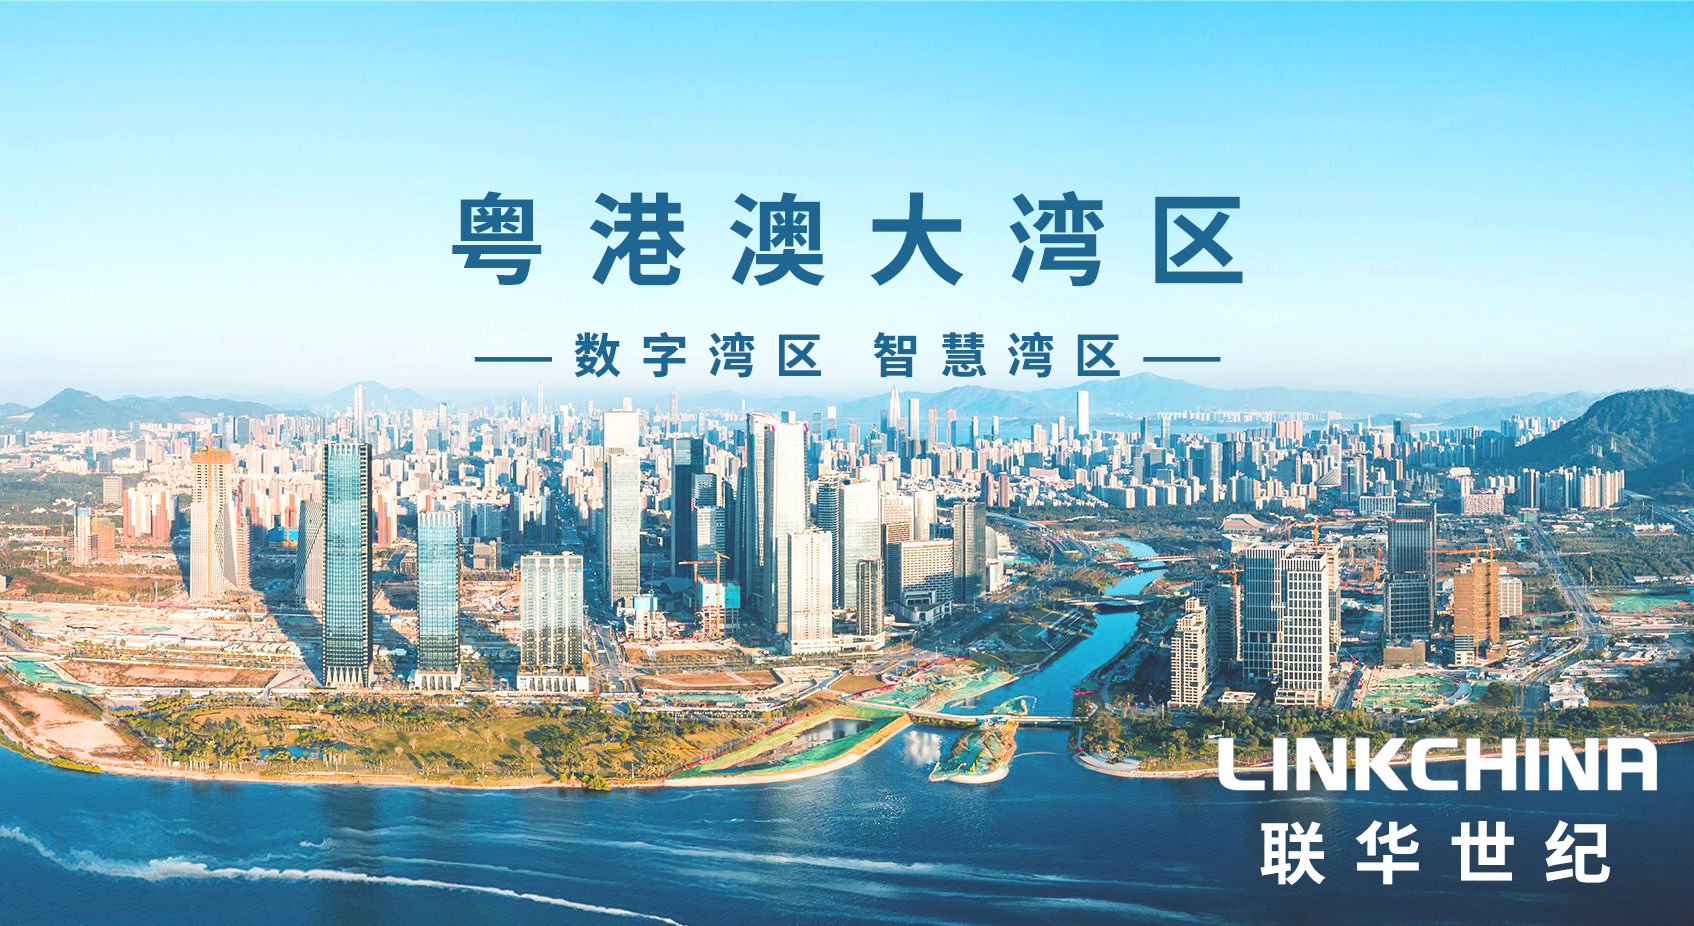 联华世纪正式成为深圳市前海新型互联网交换中心首批合作伙伴